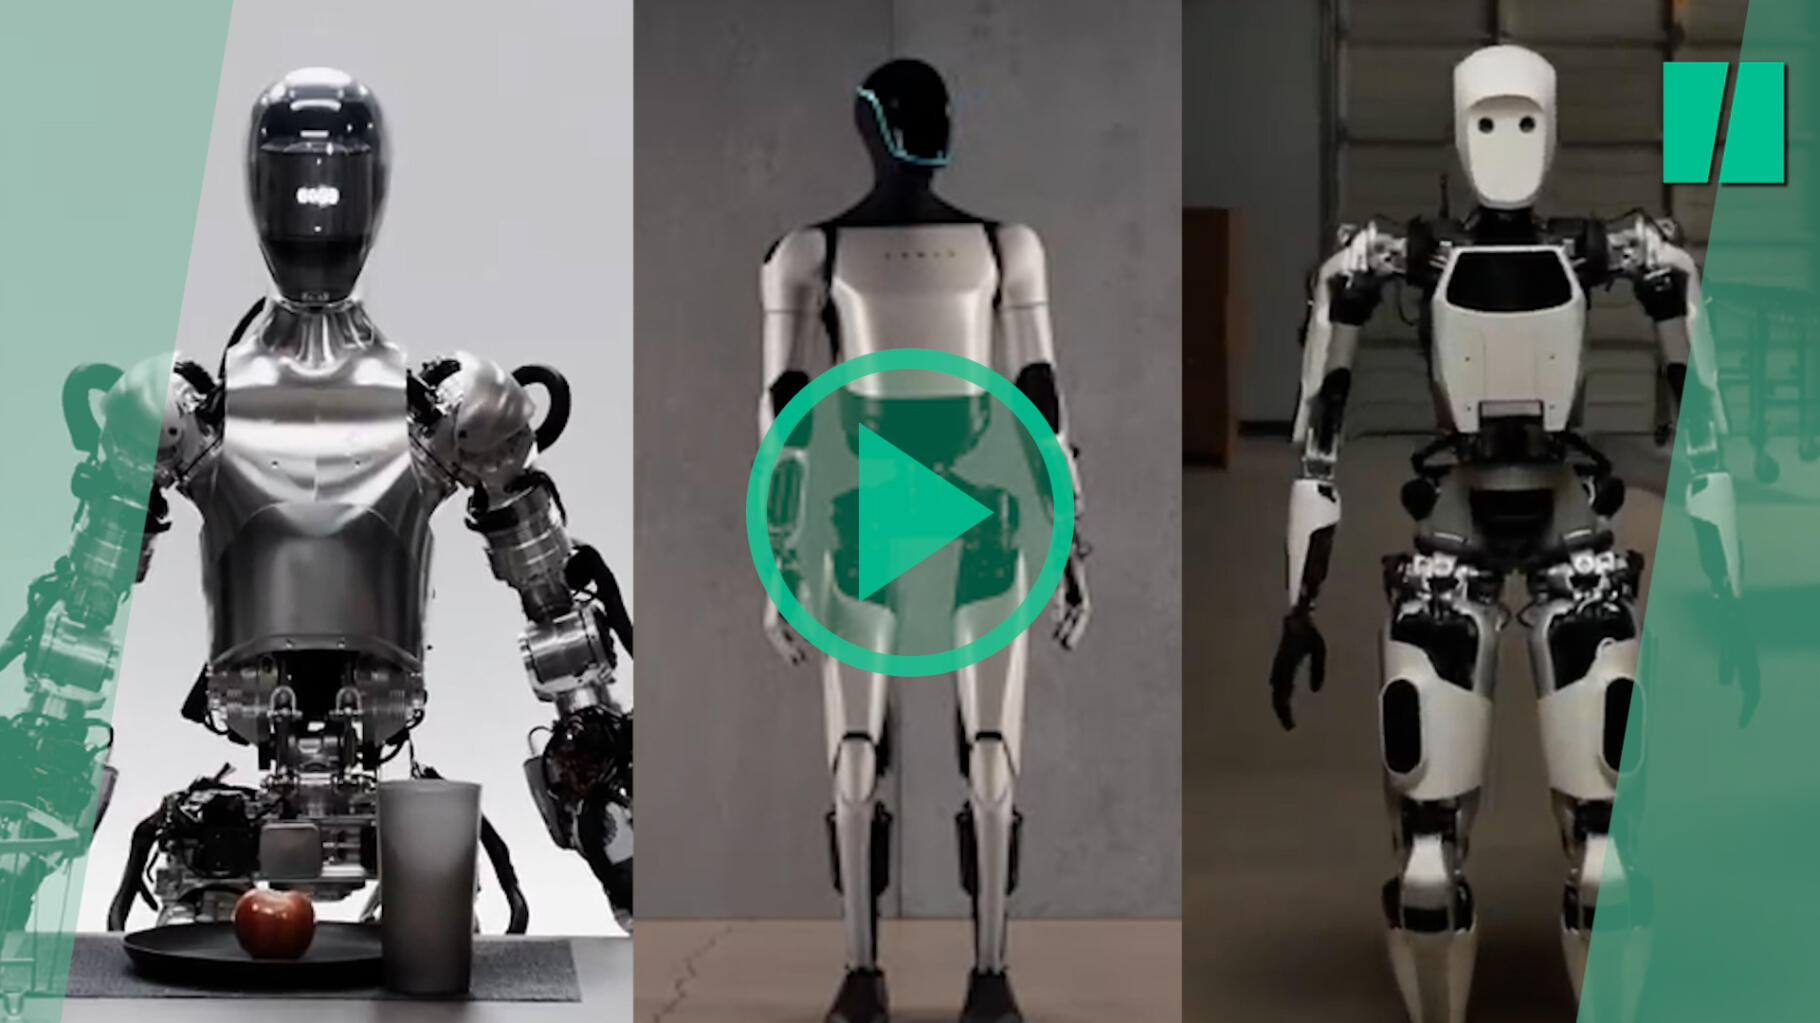 La course aux androïdes passe à la vitesse supérieure avec ces robots qui parlent